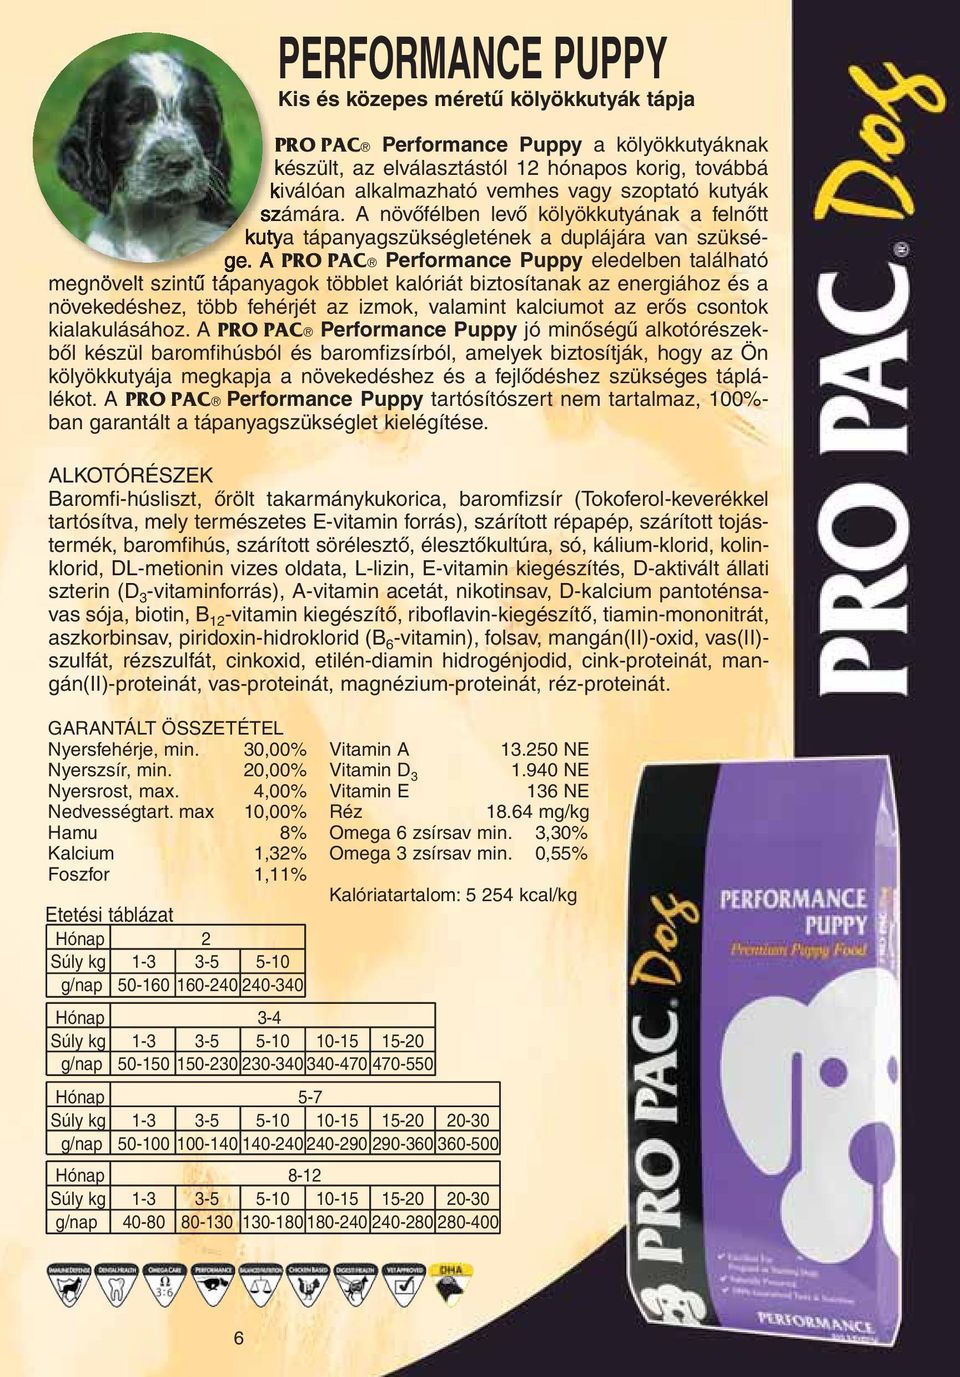 A PRO PAC Performance Puppy eledelben található megnövelt szintû tápanyagok többlet kalóriát biztosítanak az energiához és a növekedéshez, több fehérjét az izmok, valamint kalciumot az erôs csontok